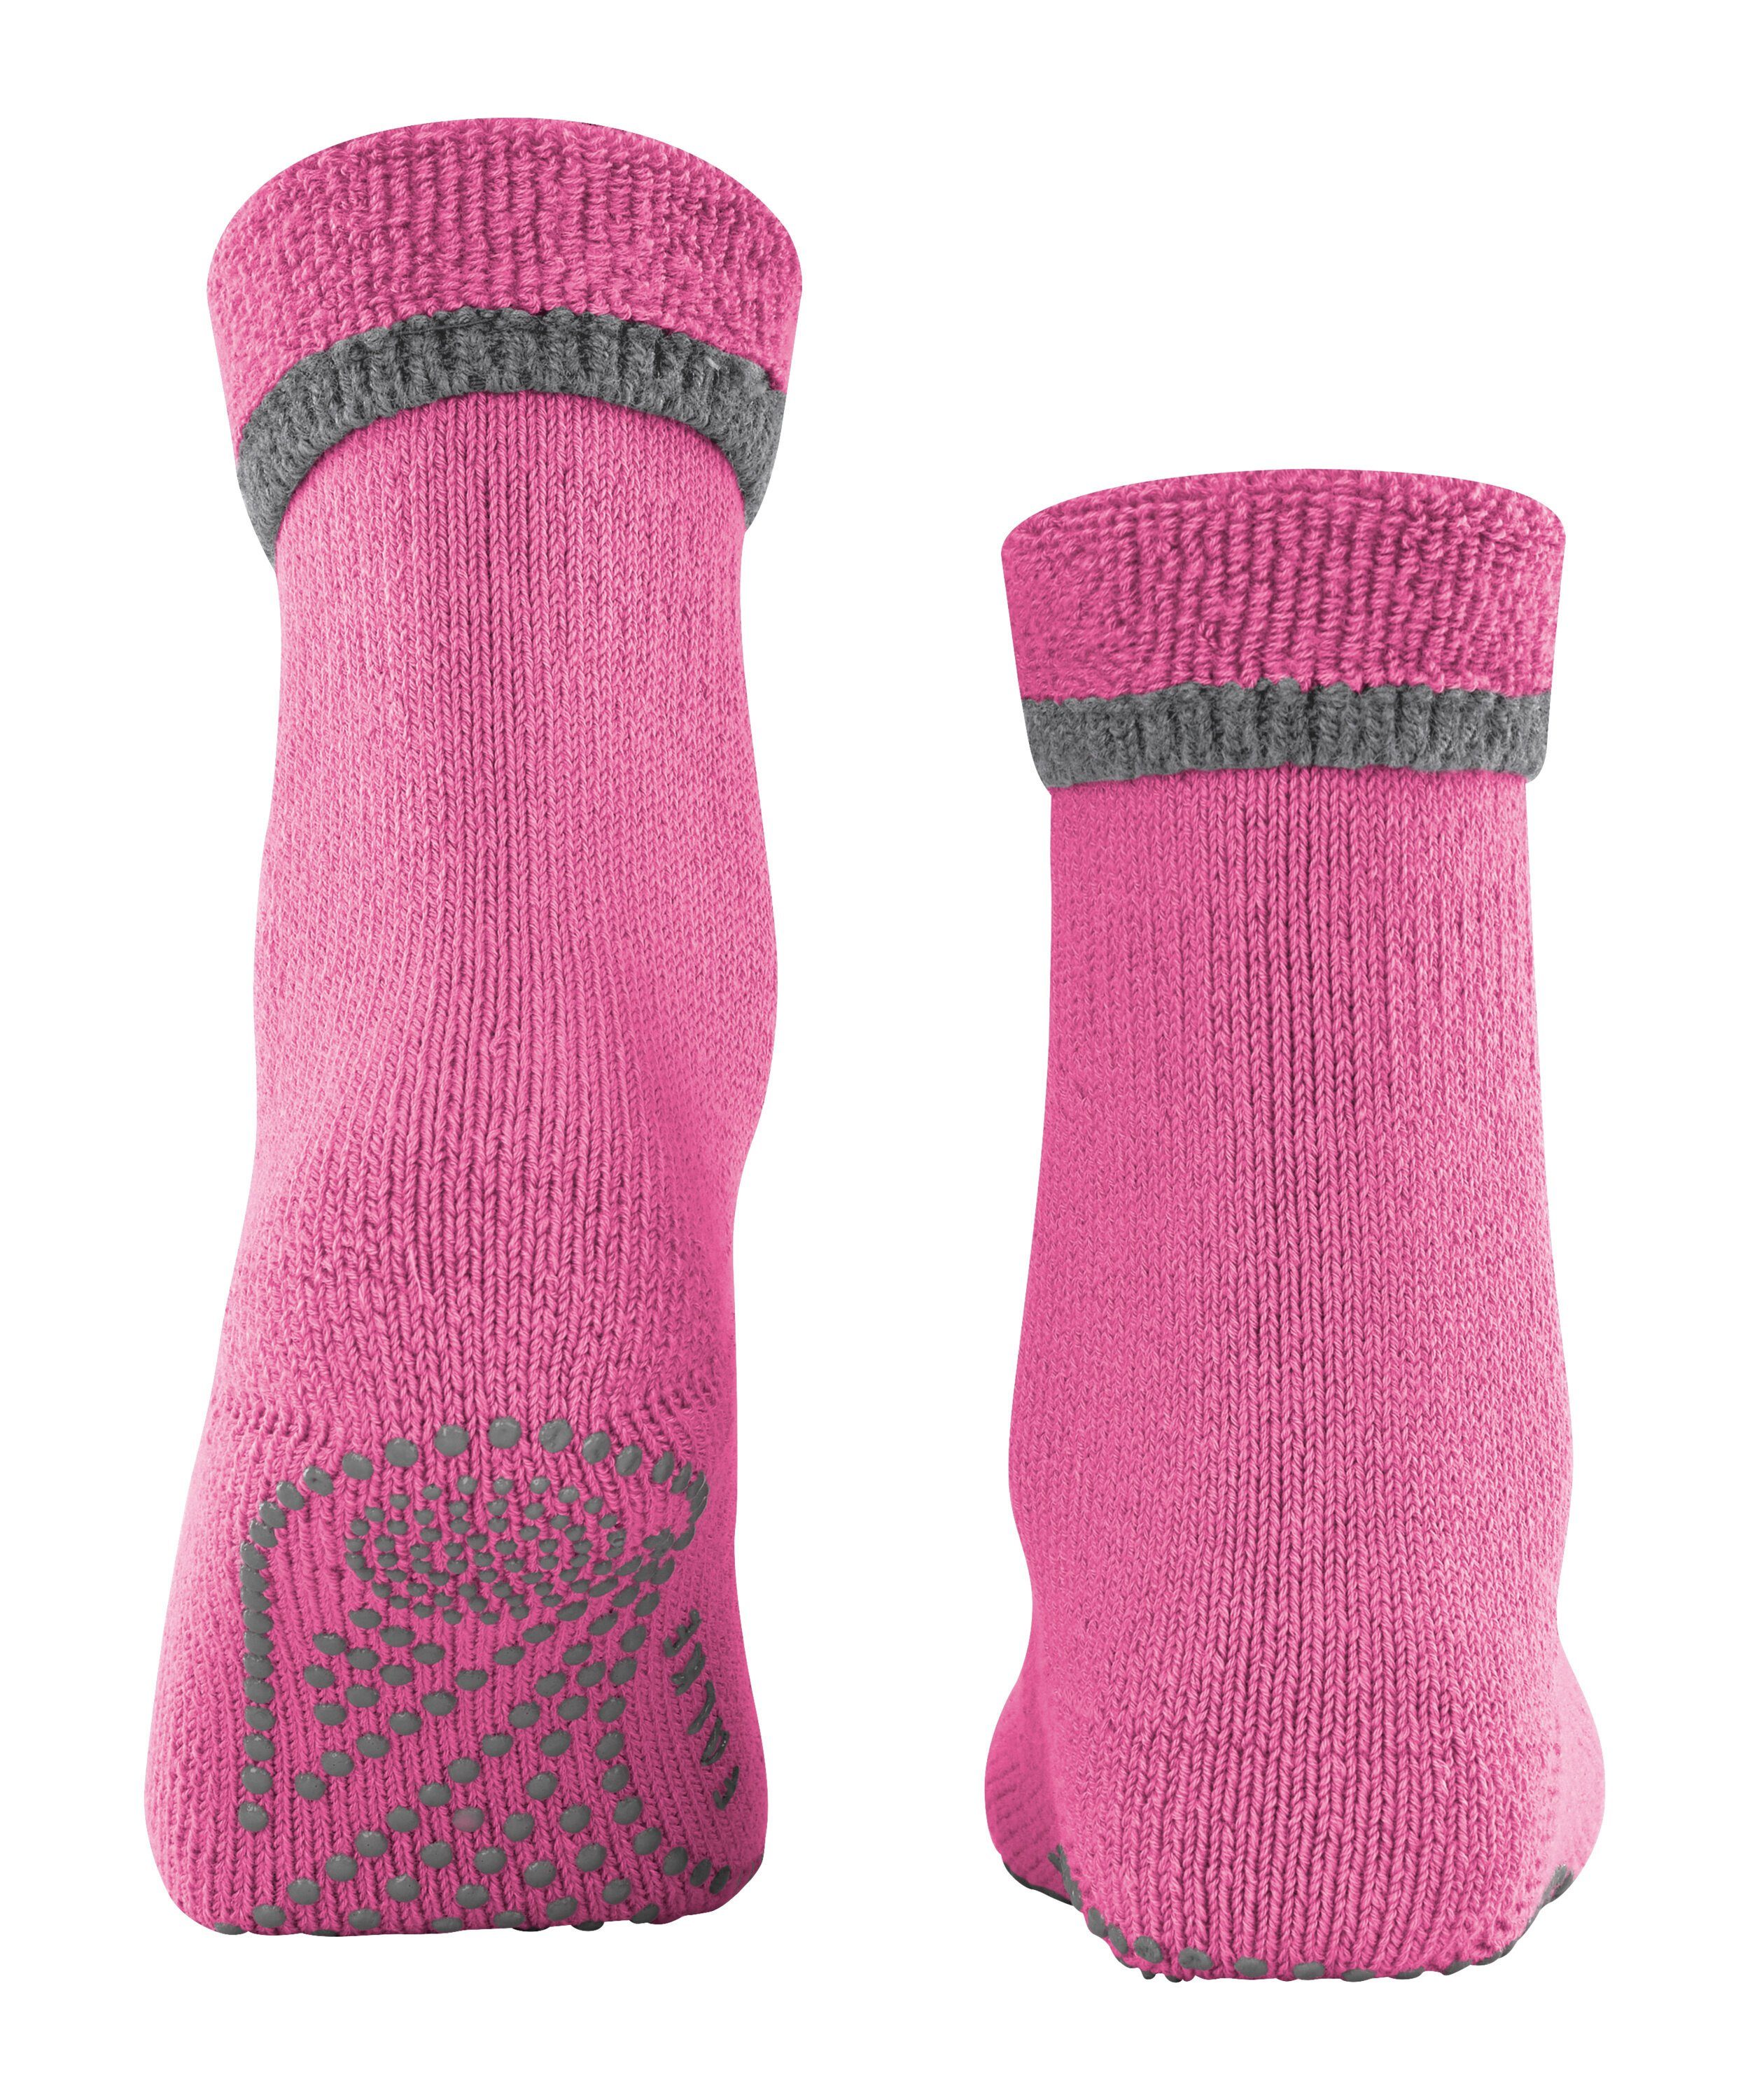 Pads (1-Paar) pink (8462) Socken FALKE Cuddle